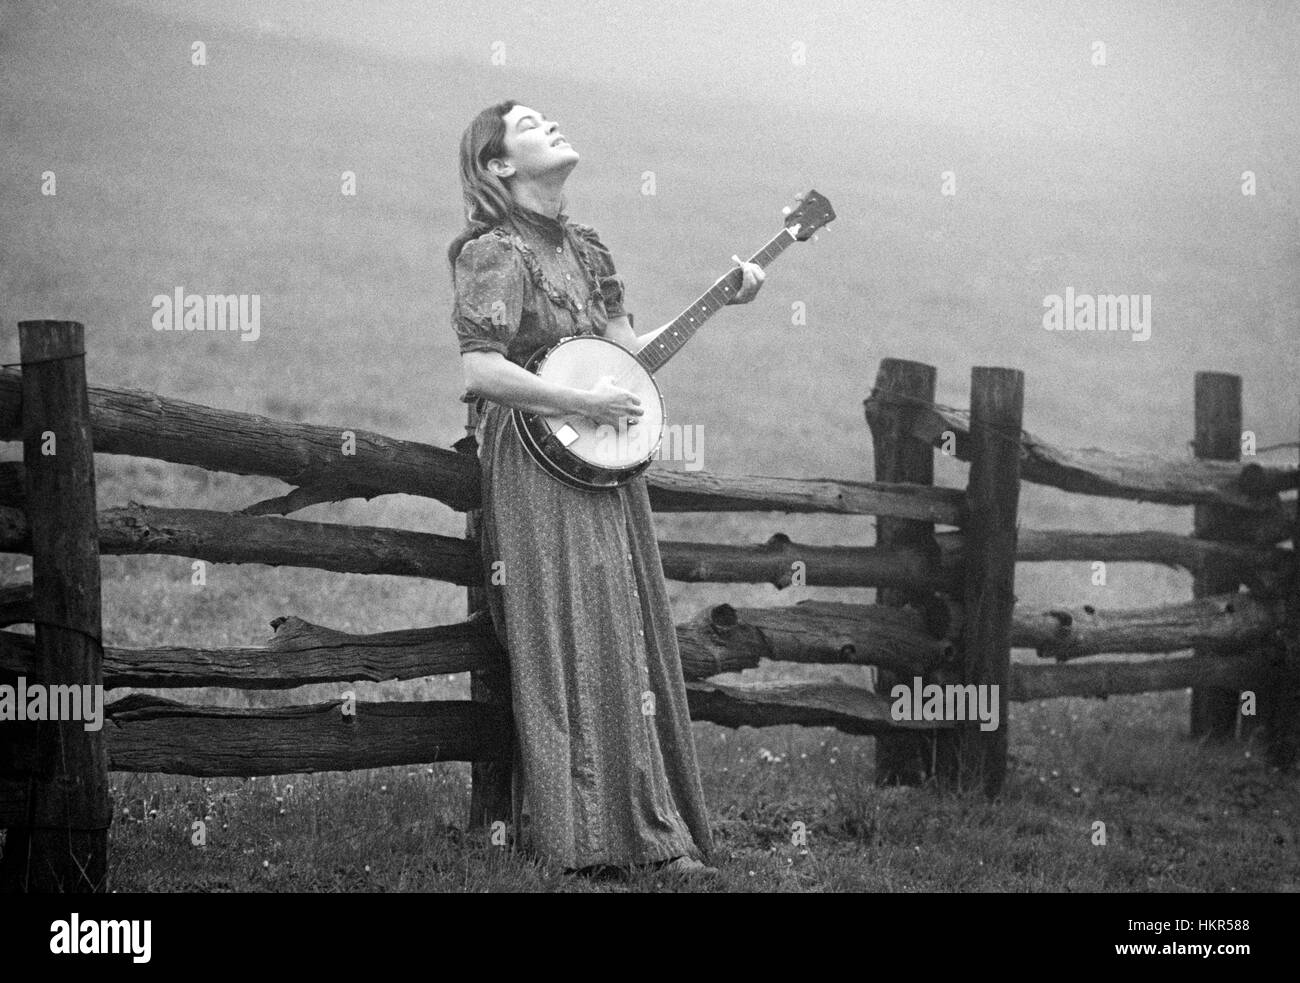 Eine junge Frau und ihre Banjo in einem nebligen Bauernhof Feld hoch in den Blue Ridge Mountains von North Carolina, am frühen Morgen im Sommer. Stockfoto